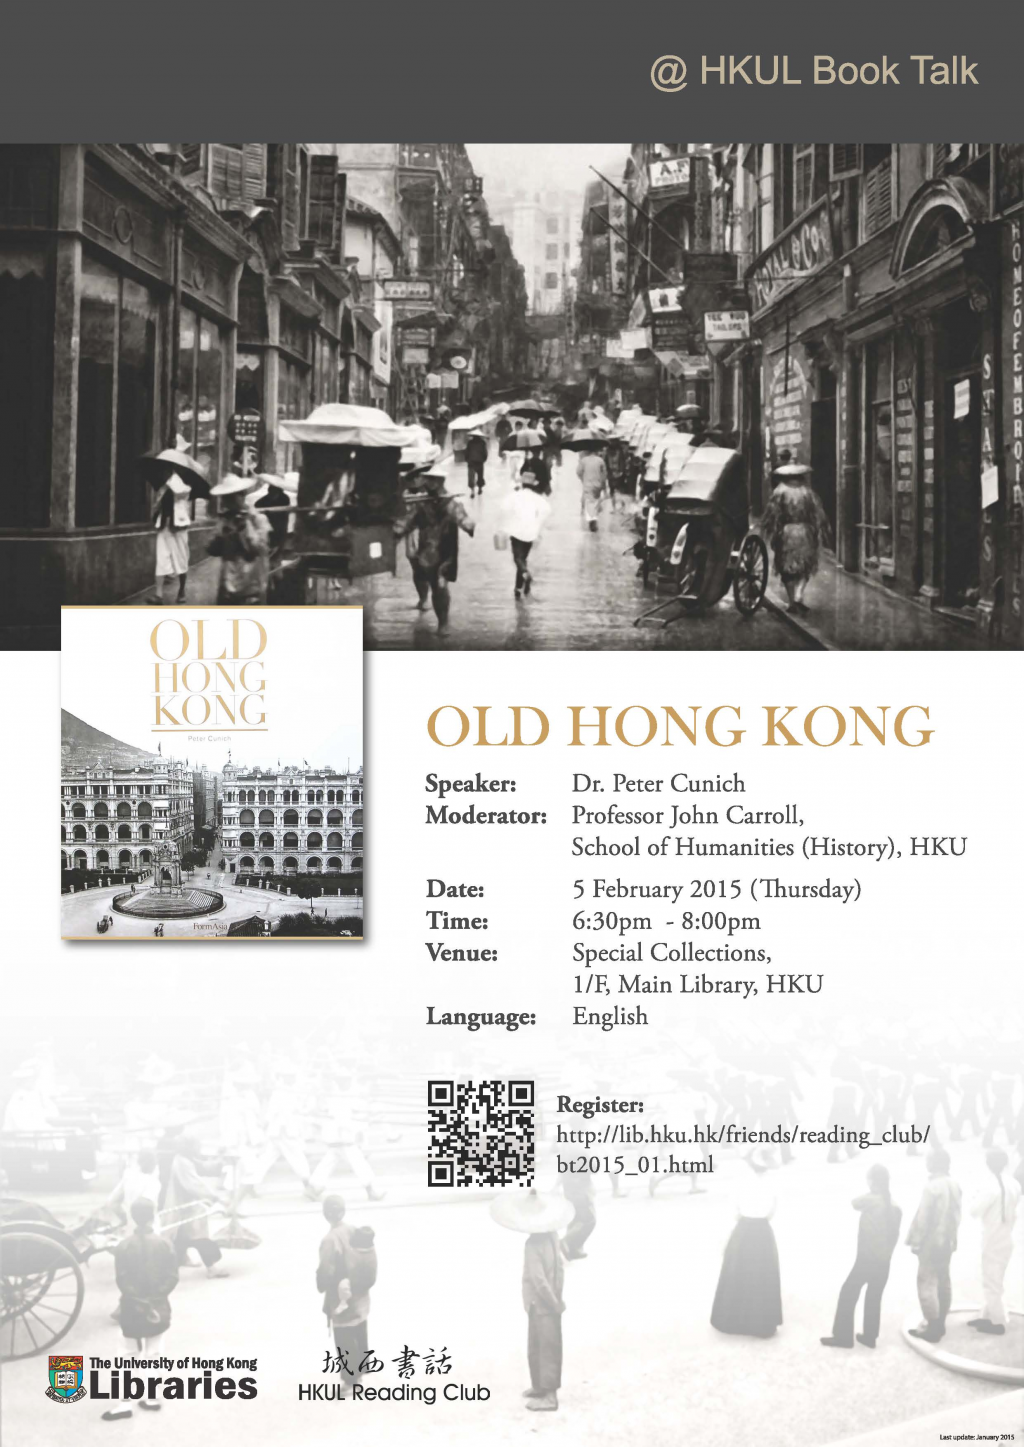 HKU Libraries Book Talk Series - Old Hong Kong